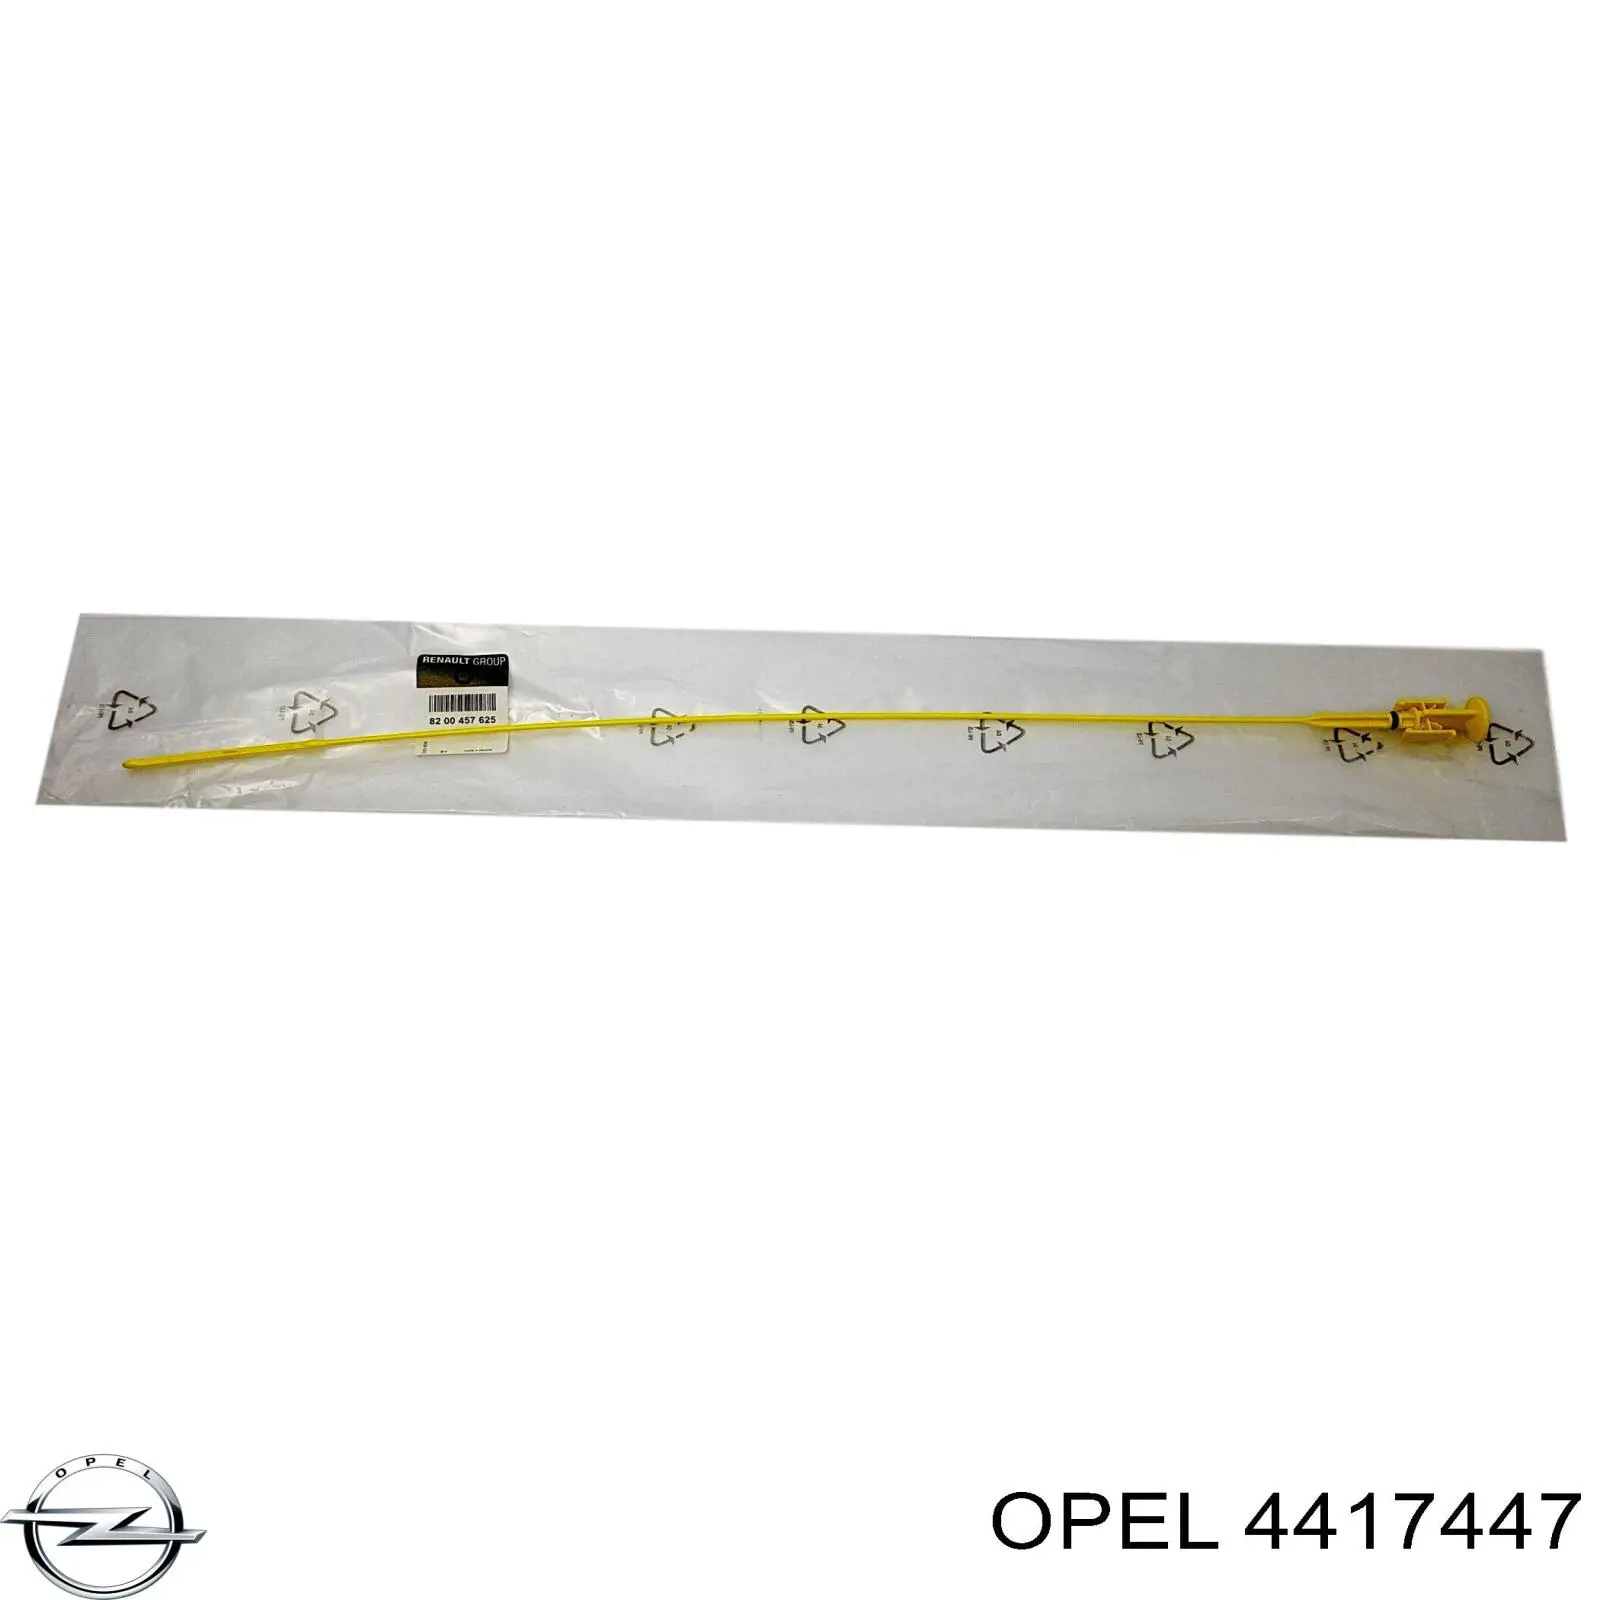 4417447 Opel щуп (индикатор уровня масла в двигателе)